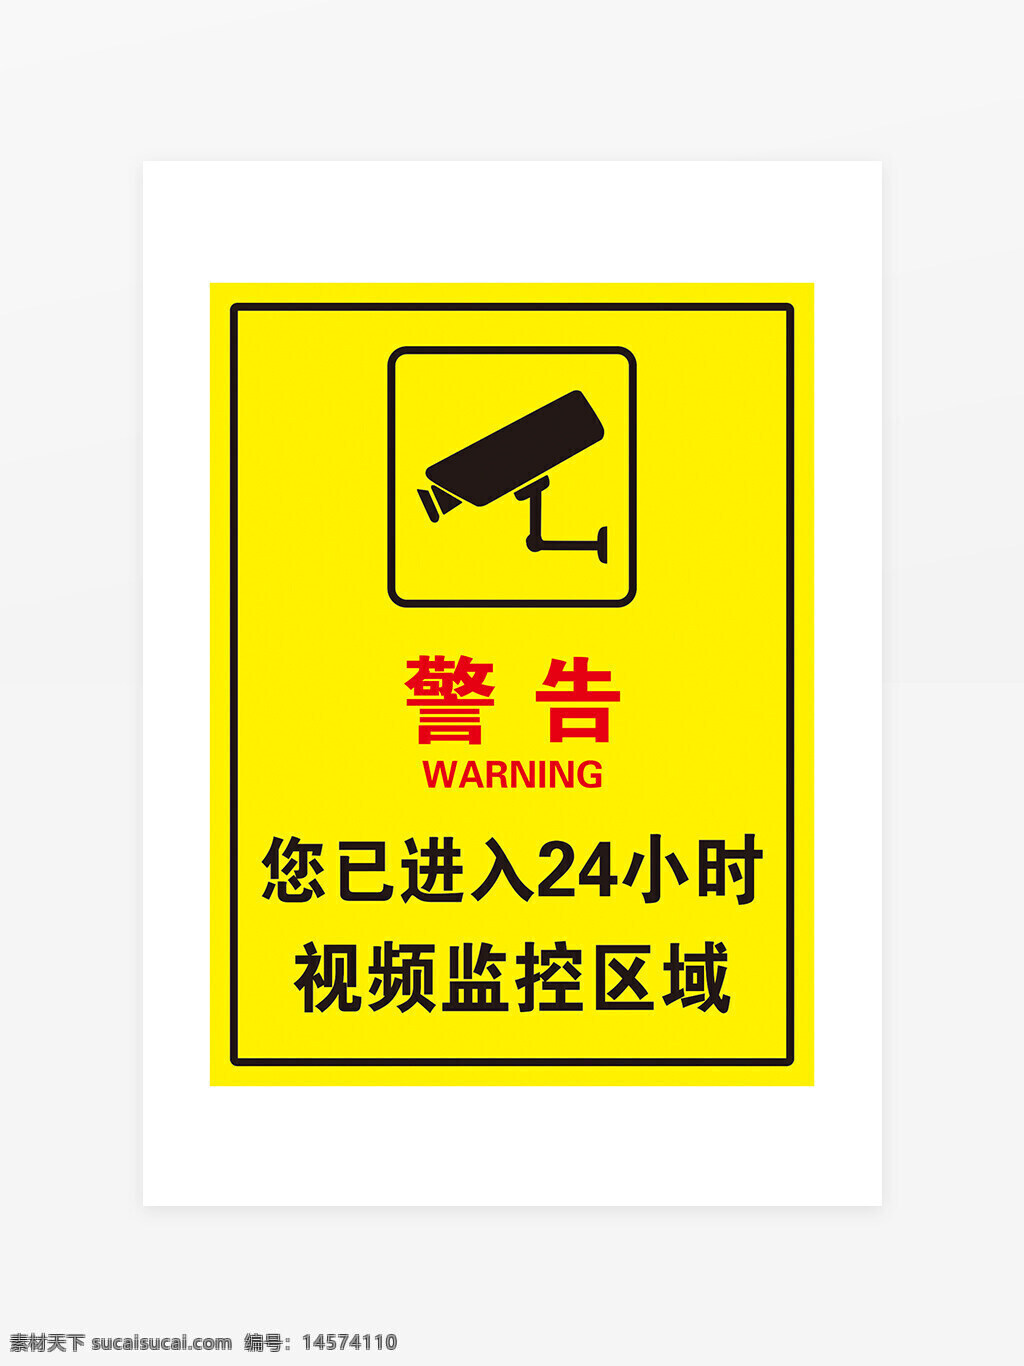 视频监控区域 监控器 监控提醒 摄像头 蓝色牌子 视频监控 视频监控提醒 警方提示 请注意言行 进入监控区 进入监控区域 你已经进入 内设监控 区域 区域监控 小区物业管理